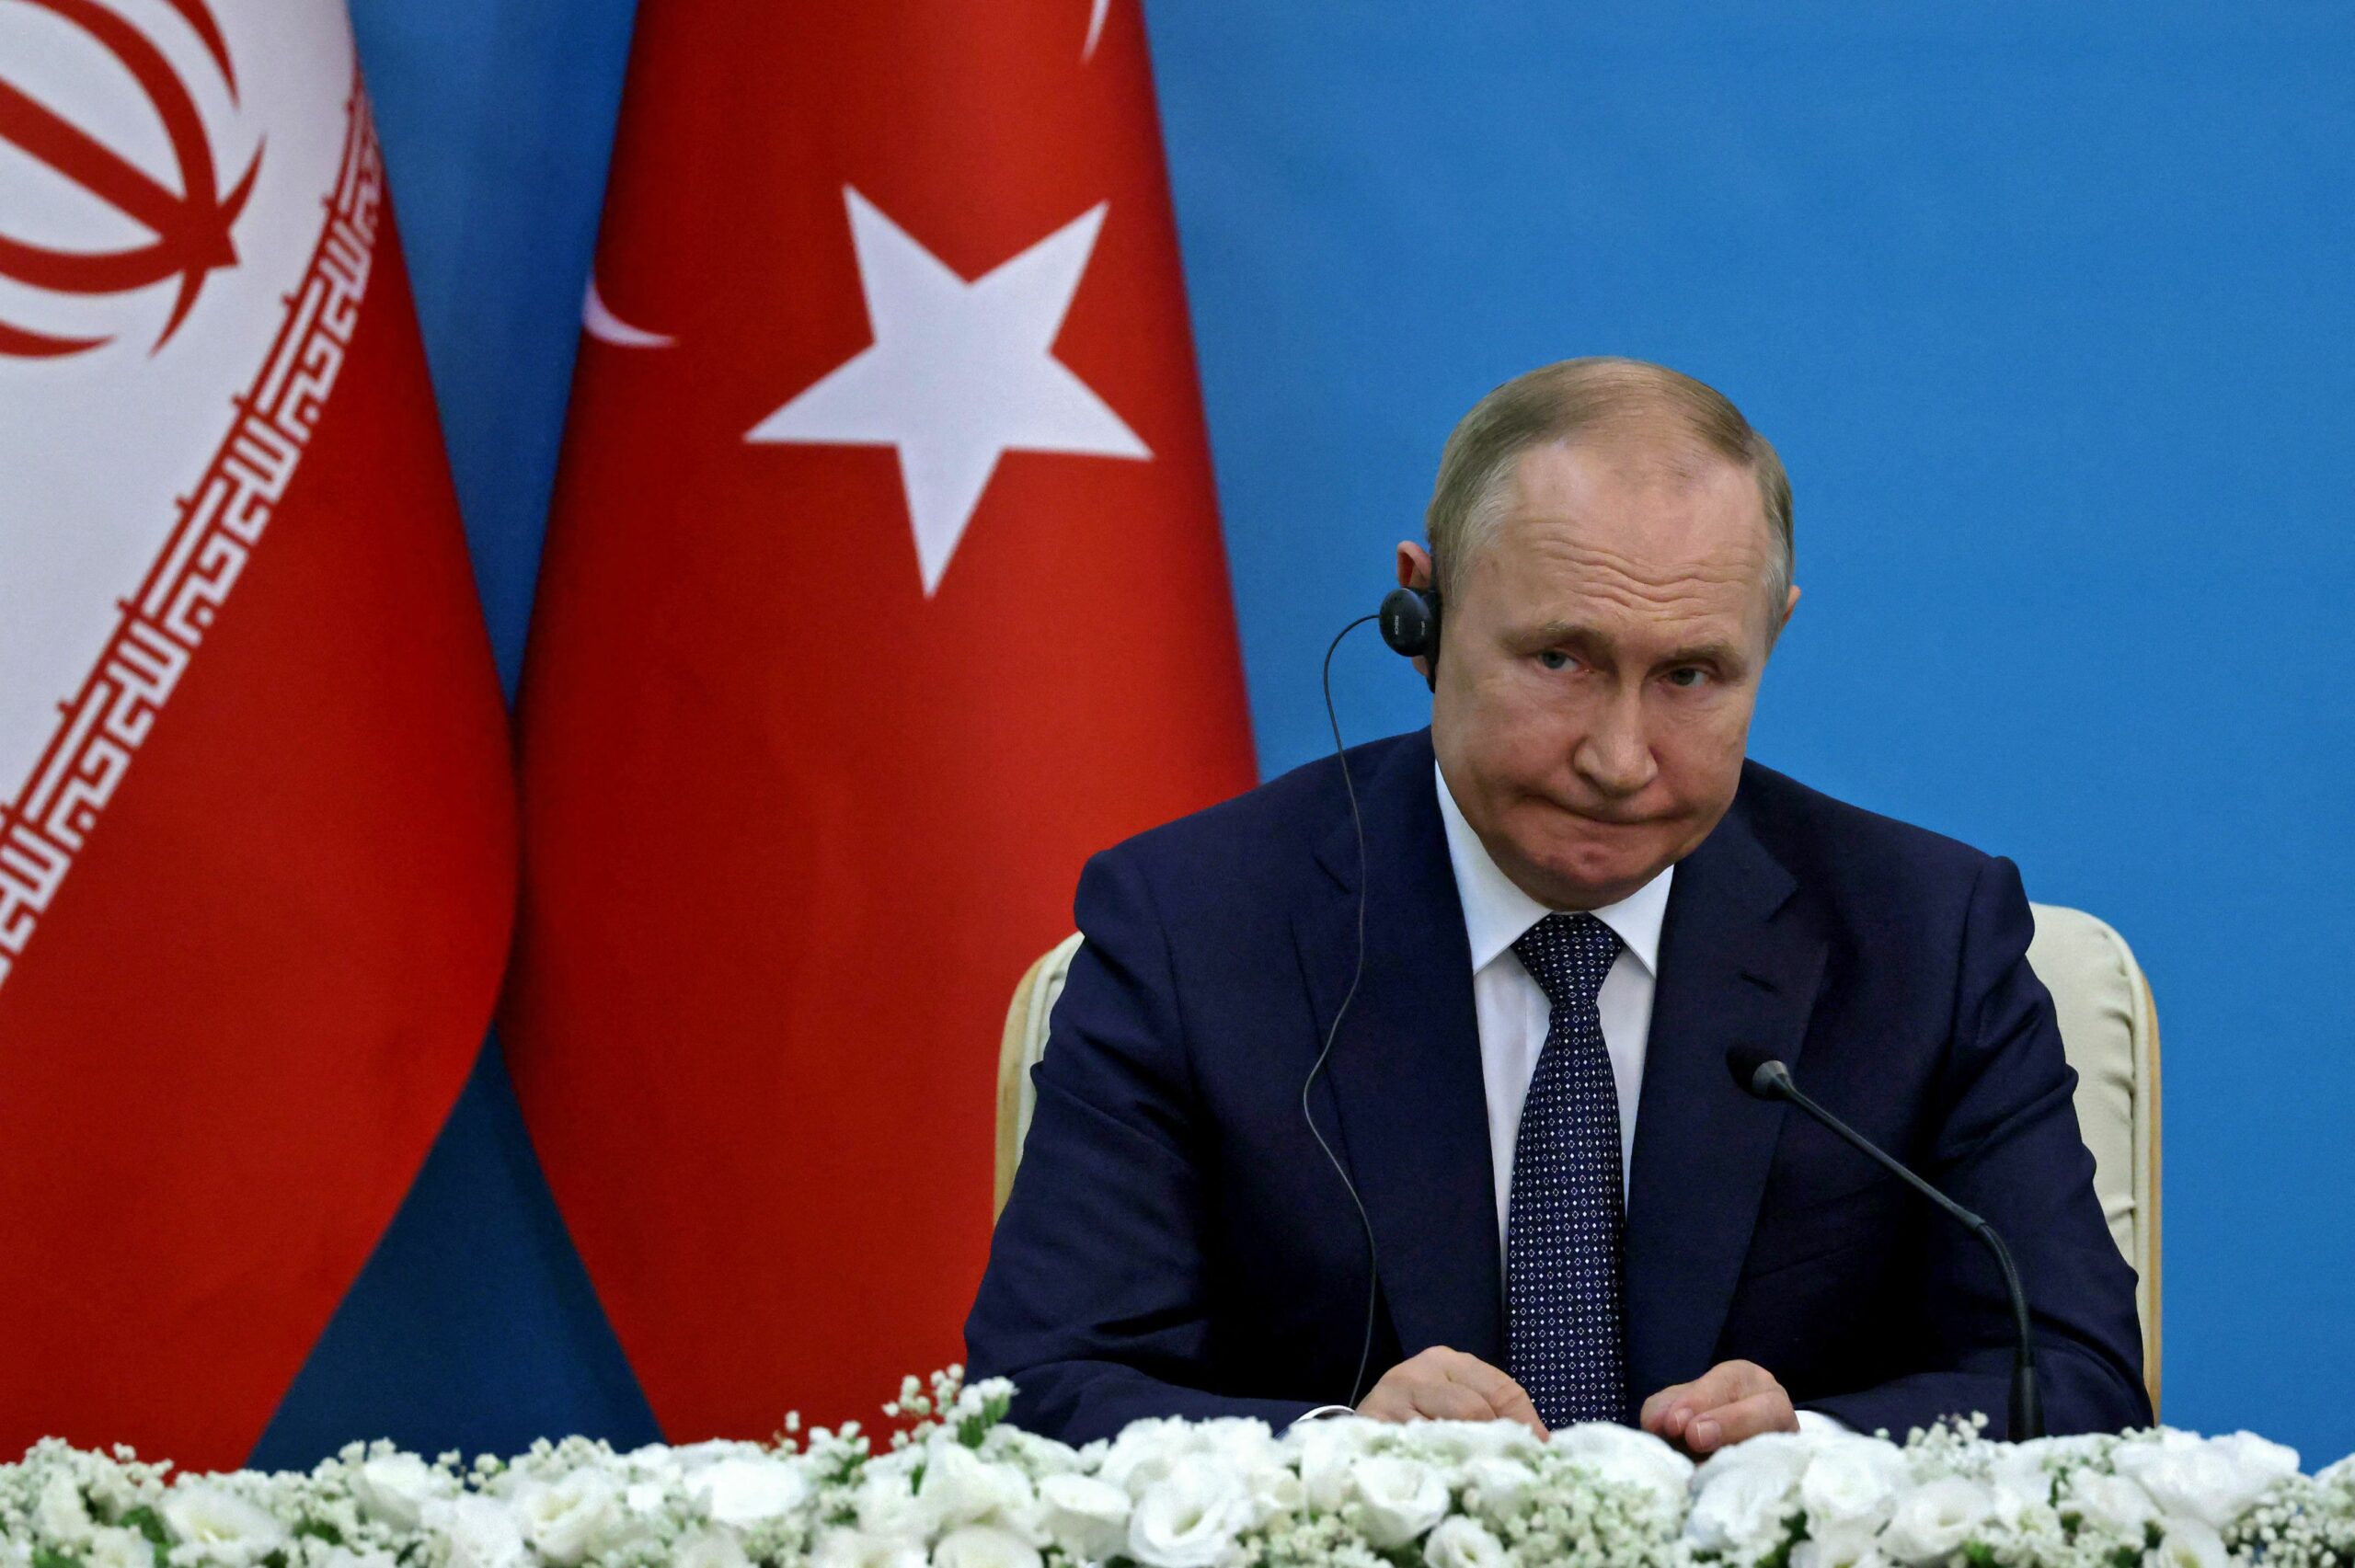 Президент России Владимир Путин на пресс-конференции в Тегеране. 19 июля 2022 года. Фото ATTA KENARE/AFP/Scanpix/LETA